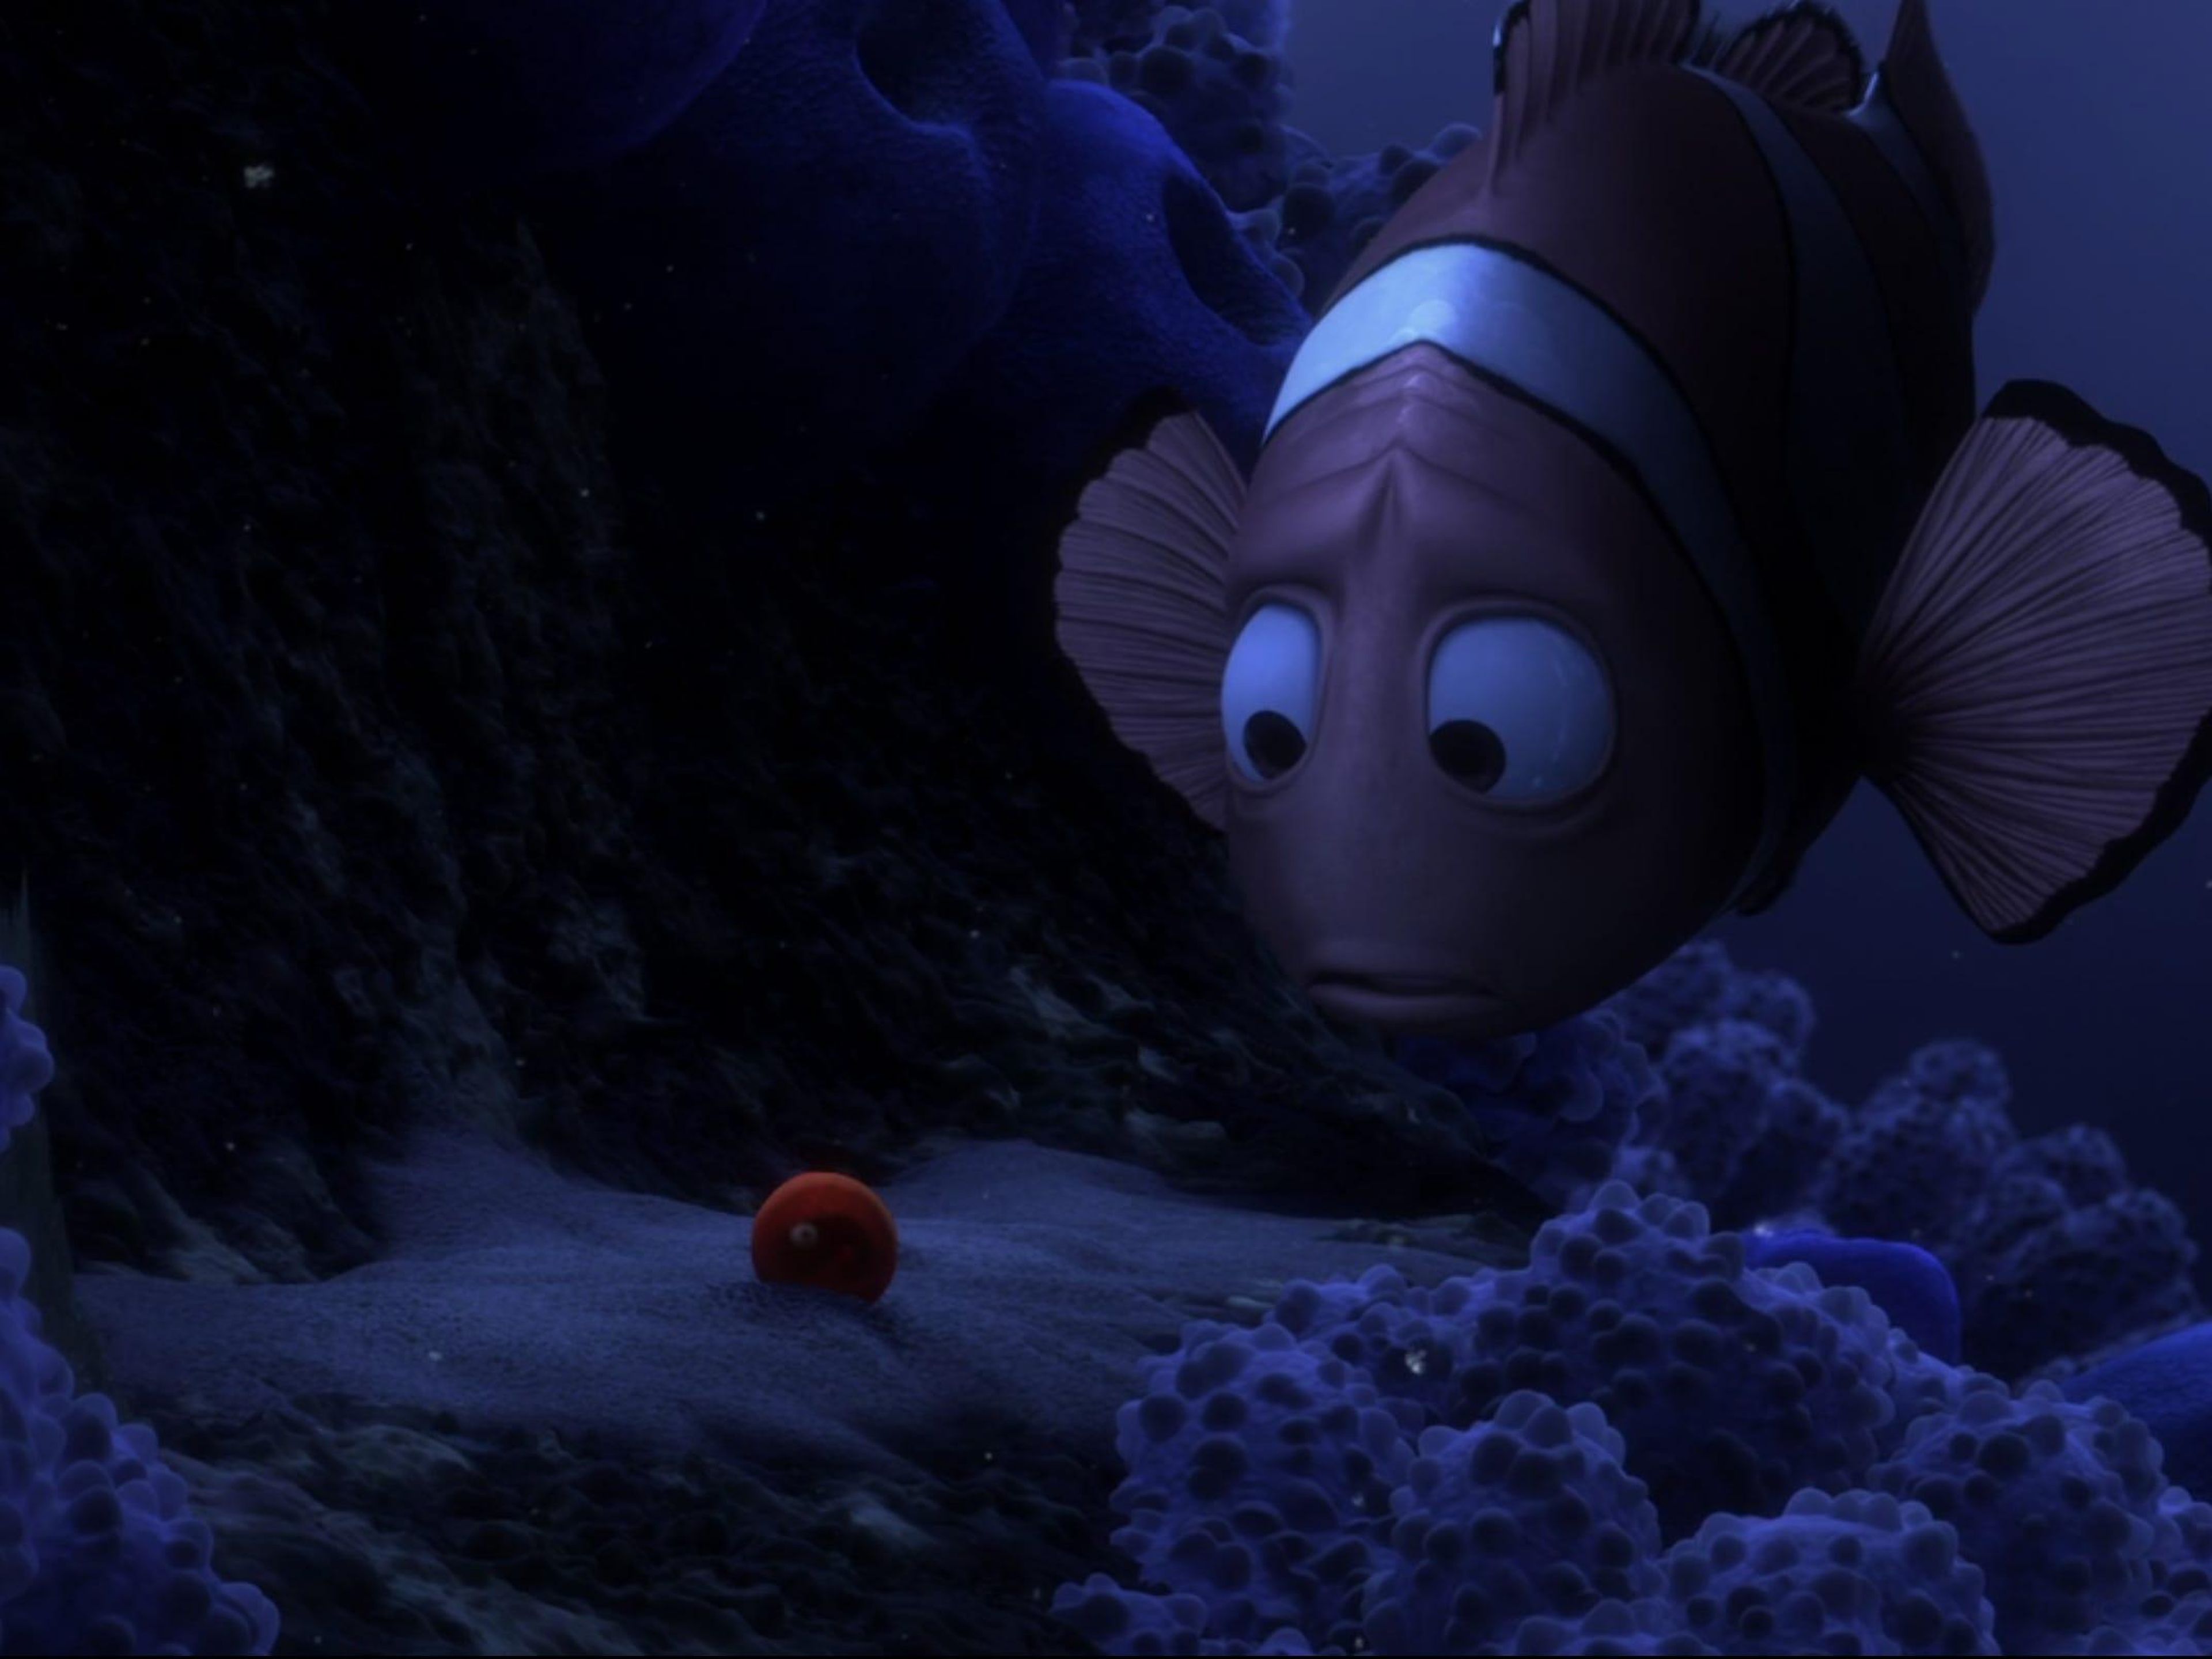 Al igual que 'Up', 'Buscando a Nemo' comienza con una escena devastadora.